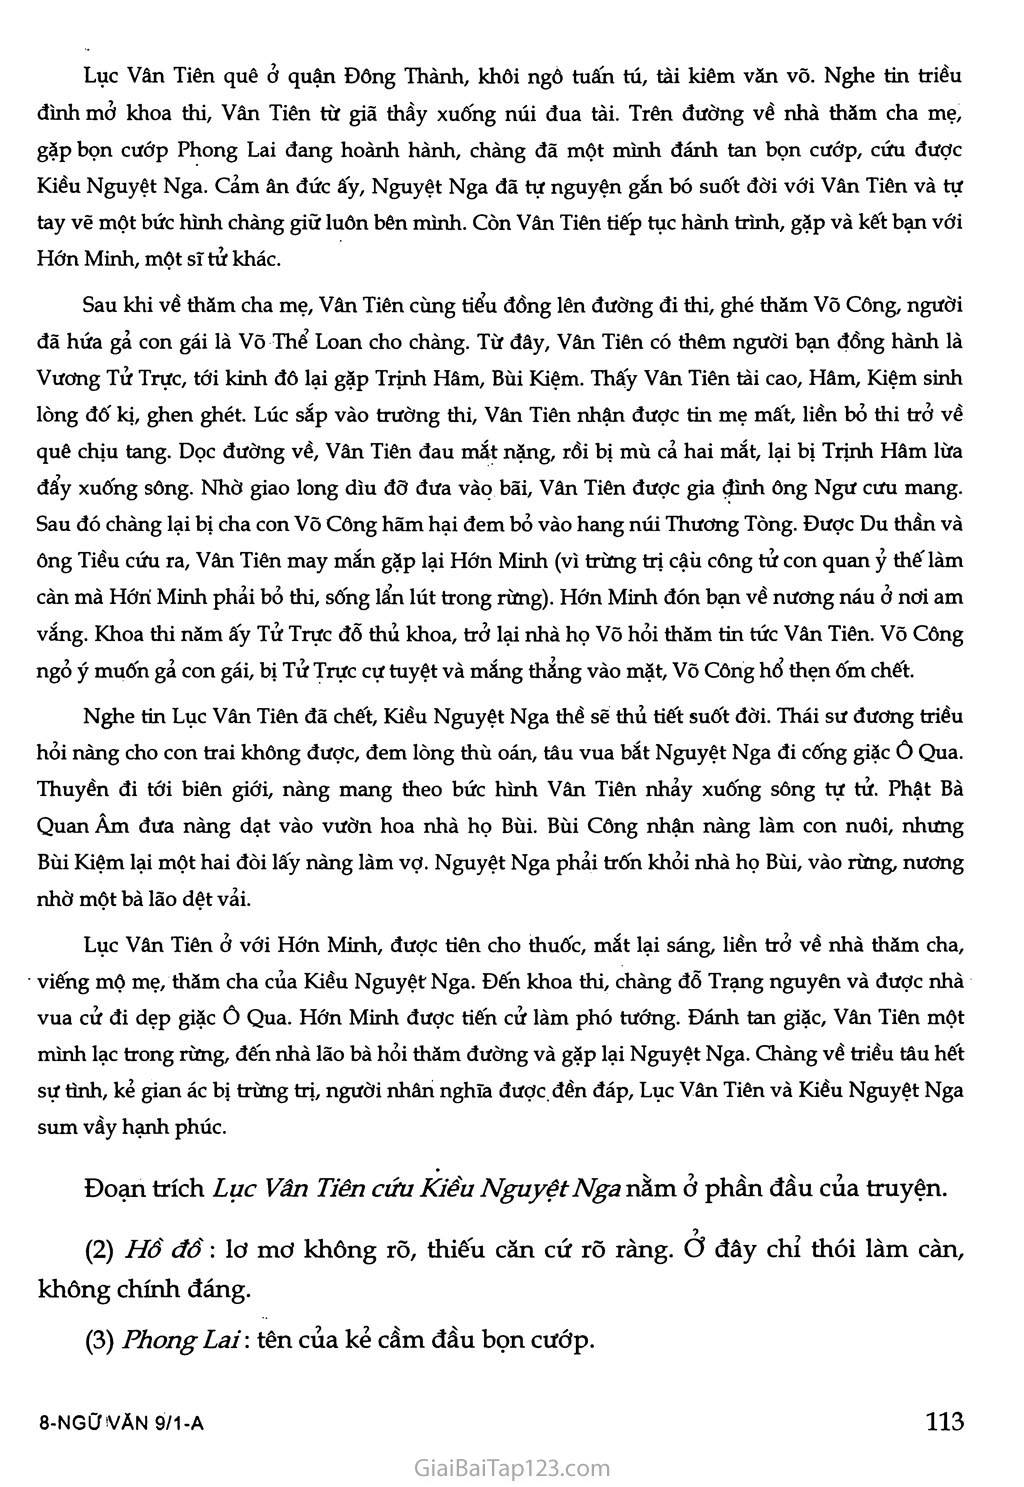 Lục Vân Tiên cứu Kiều Nguyệt Nga (trích Truyện Lục Vân Tiên) trang 5